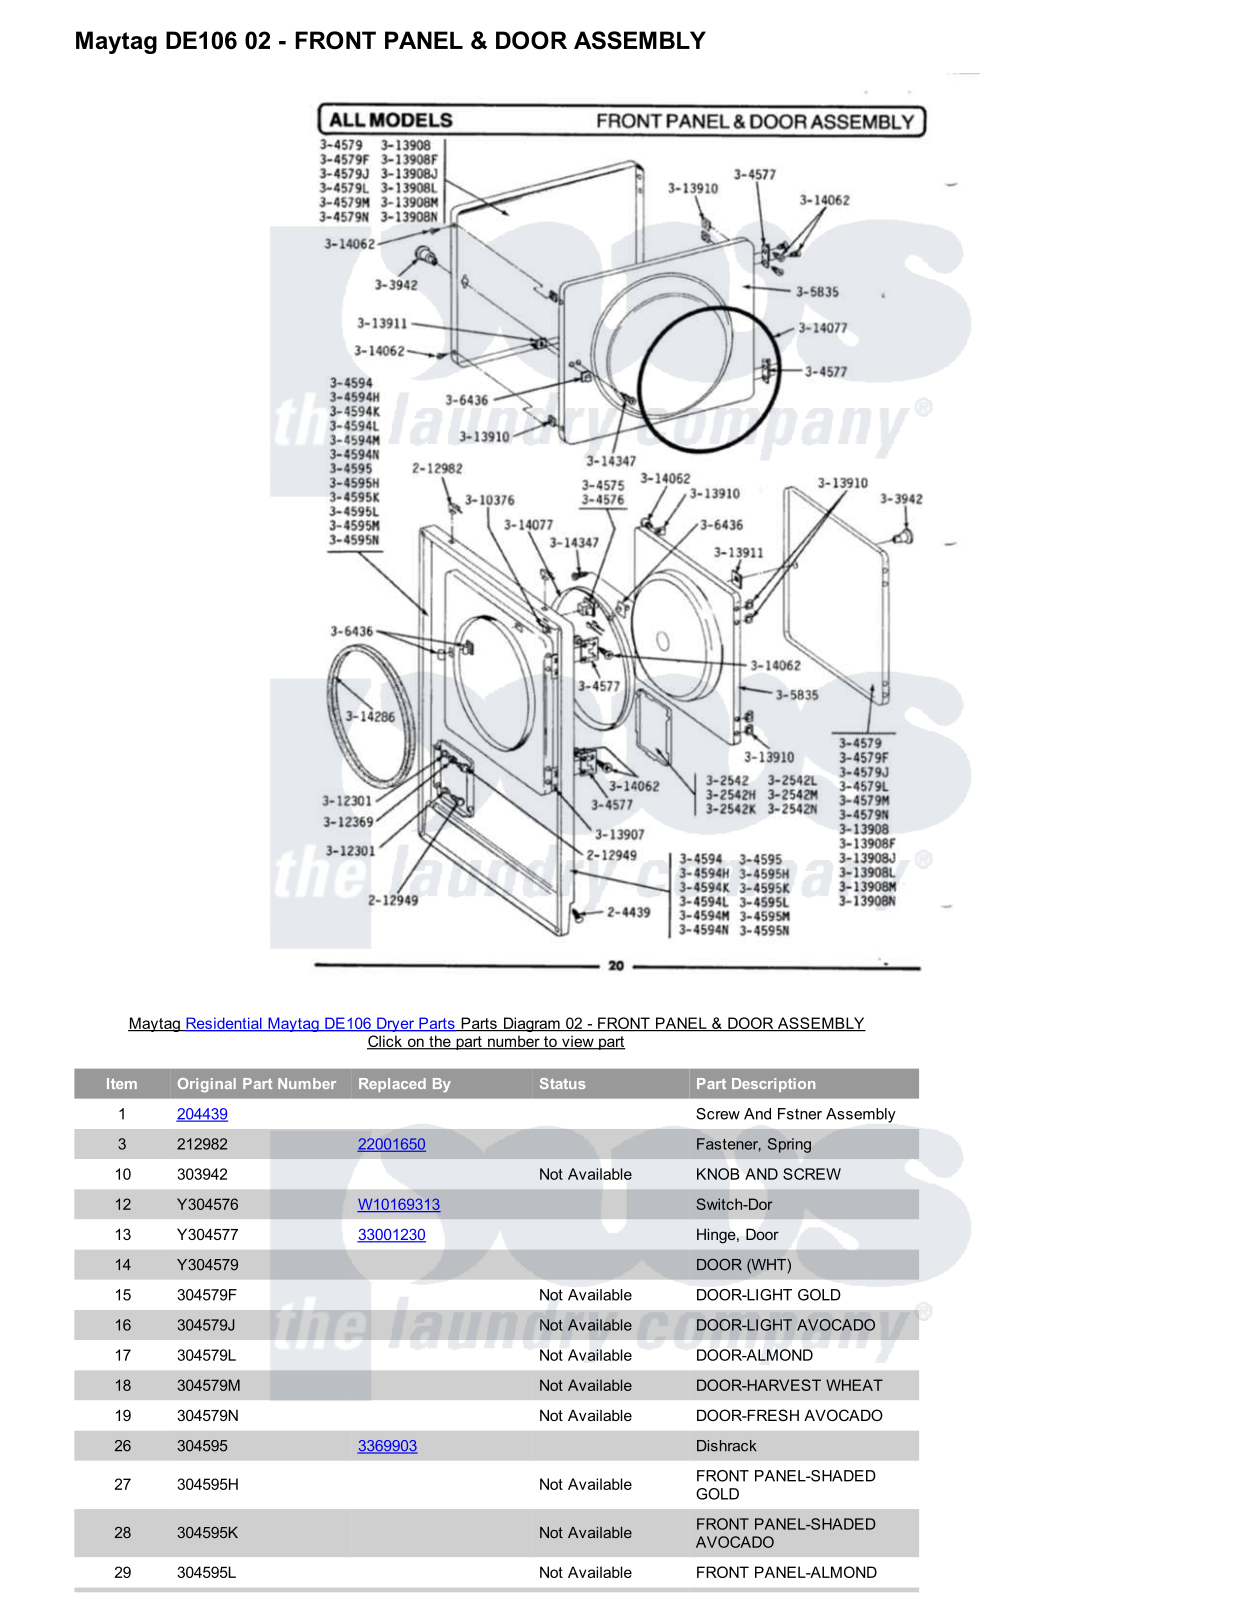 Maytag DE106 Parts Diagram